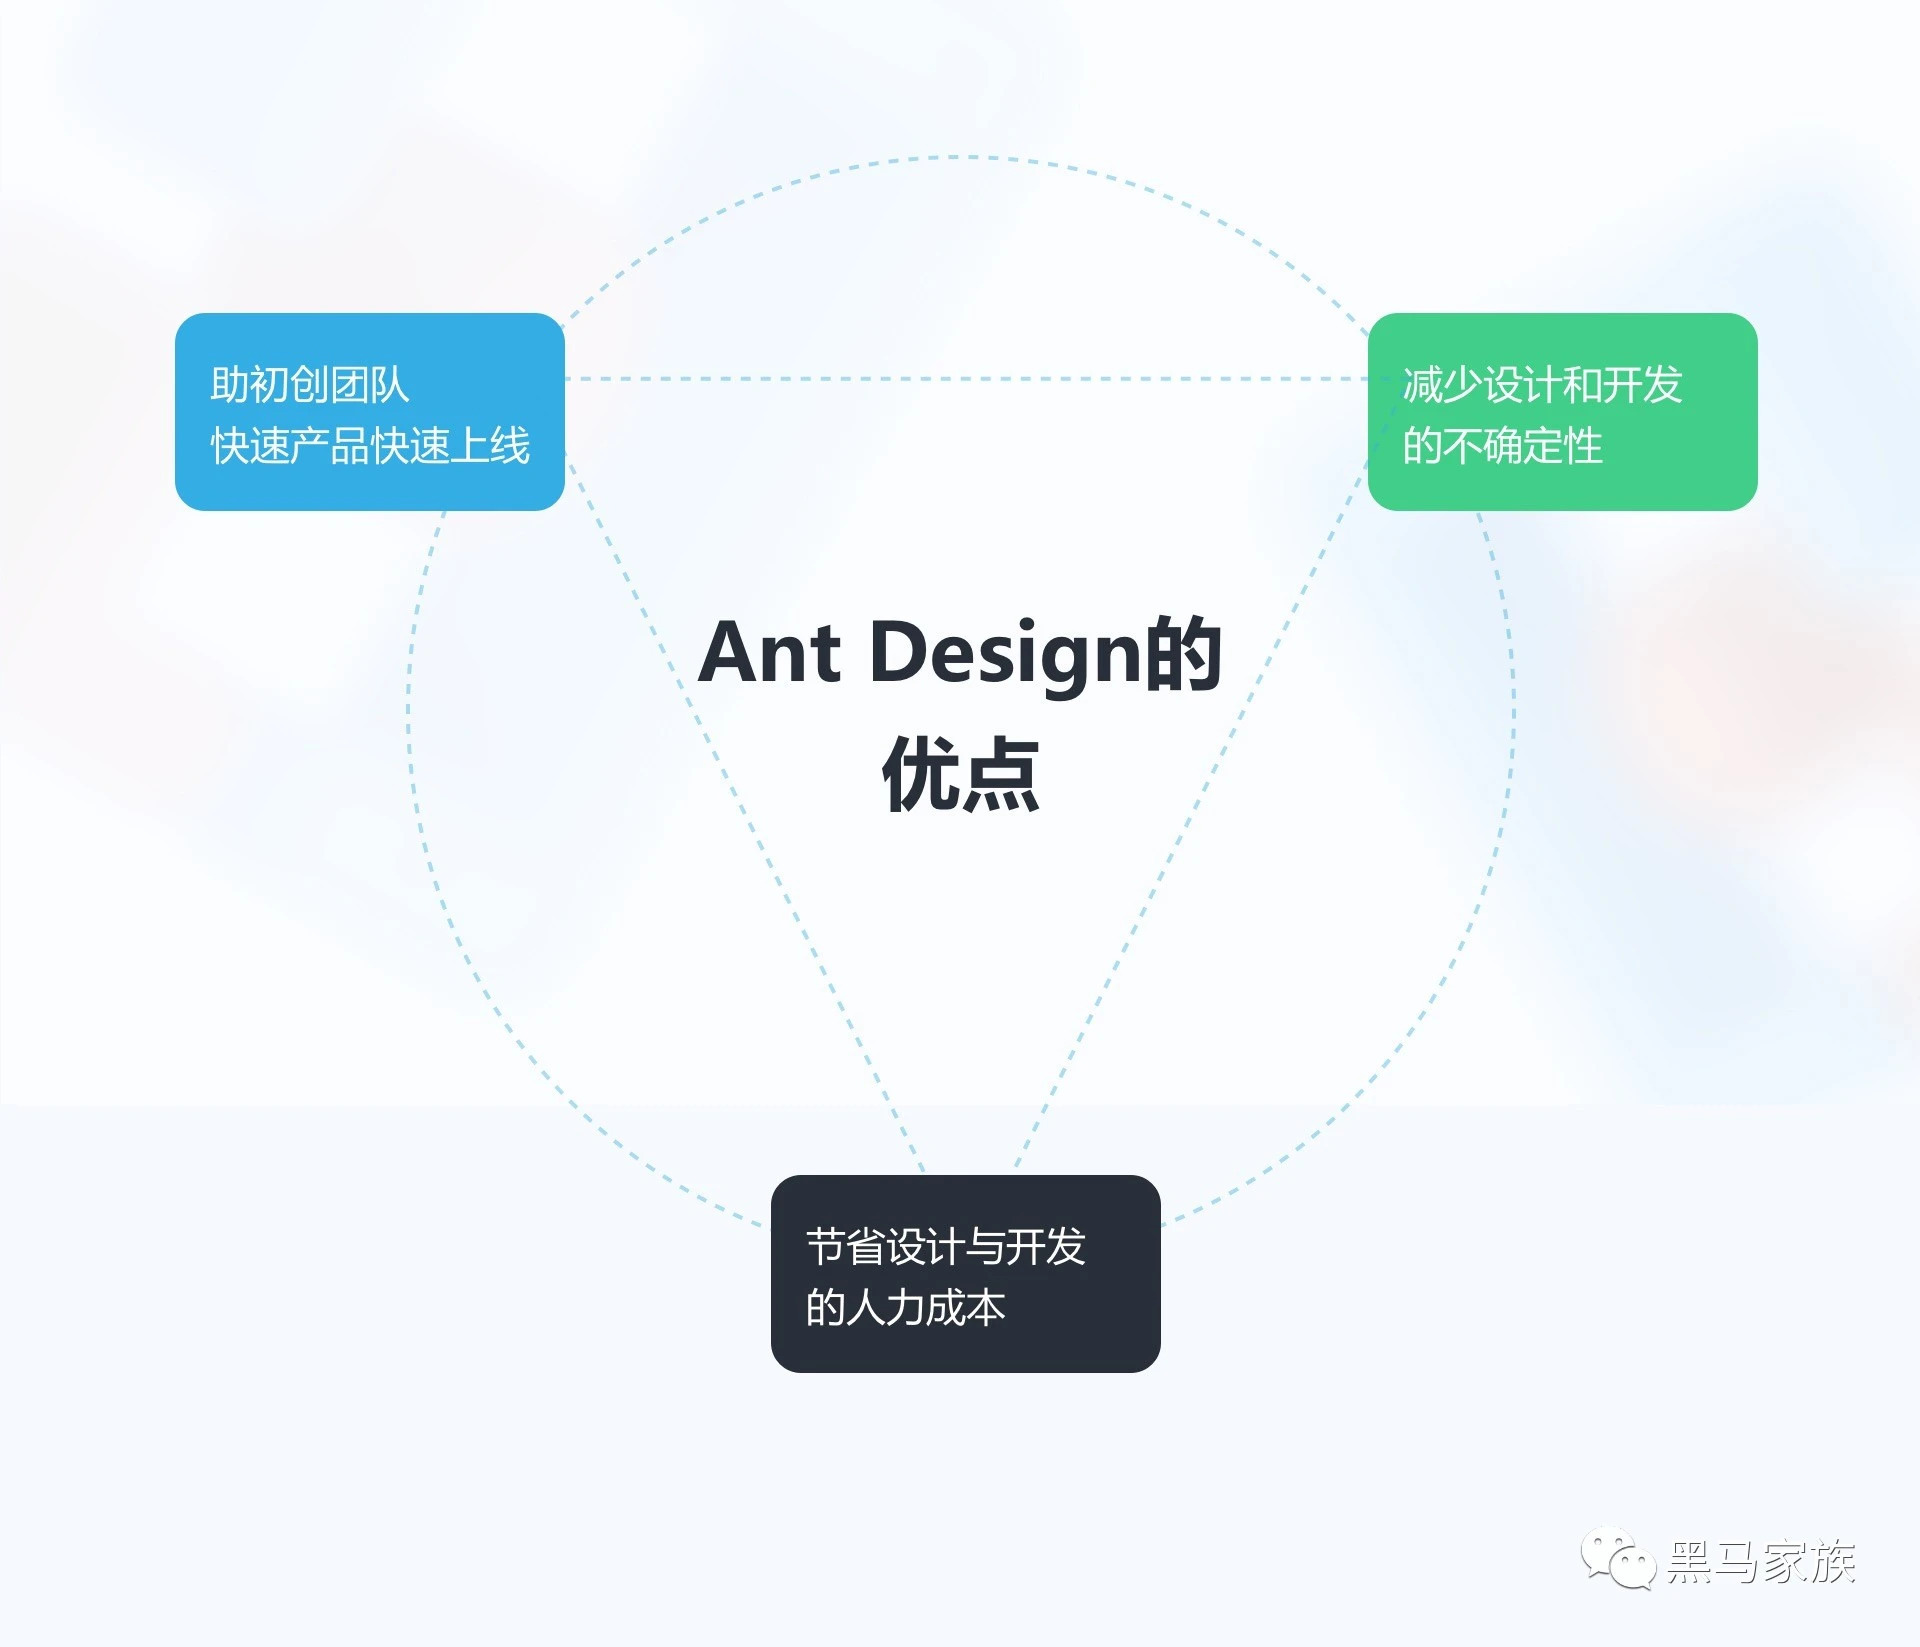 深度解析蚂蚁Ant Design的设计原则